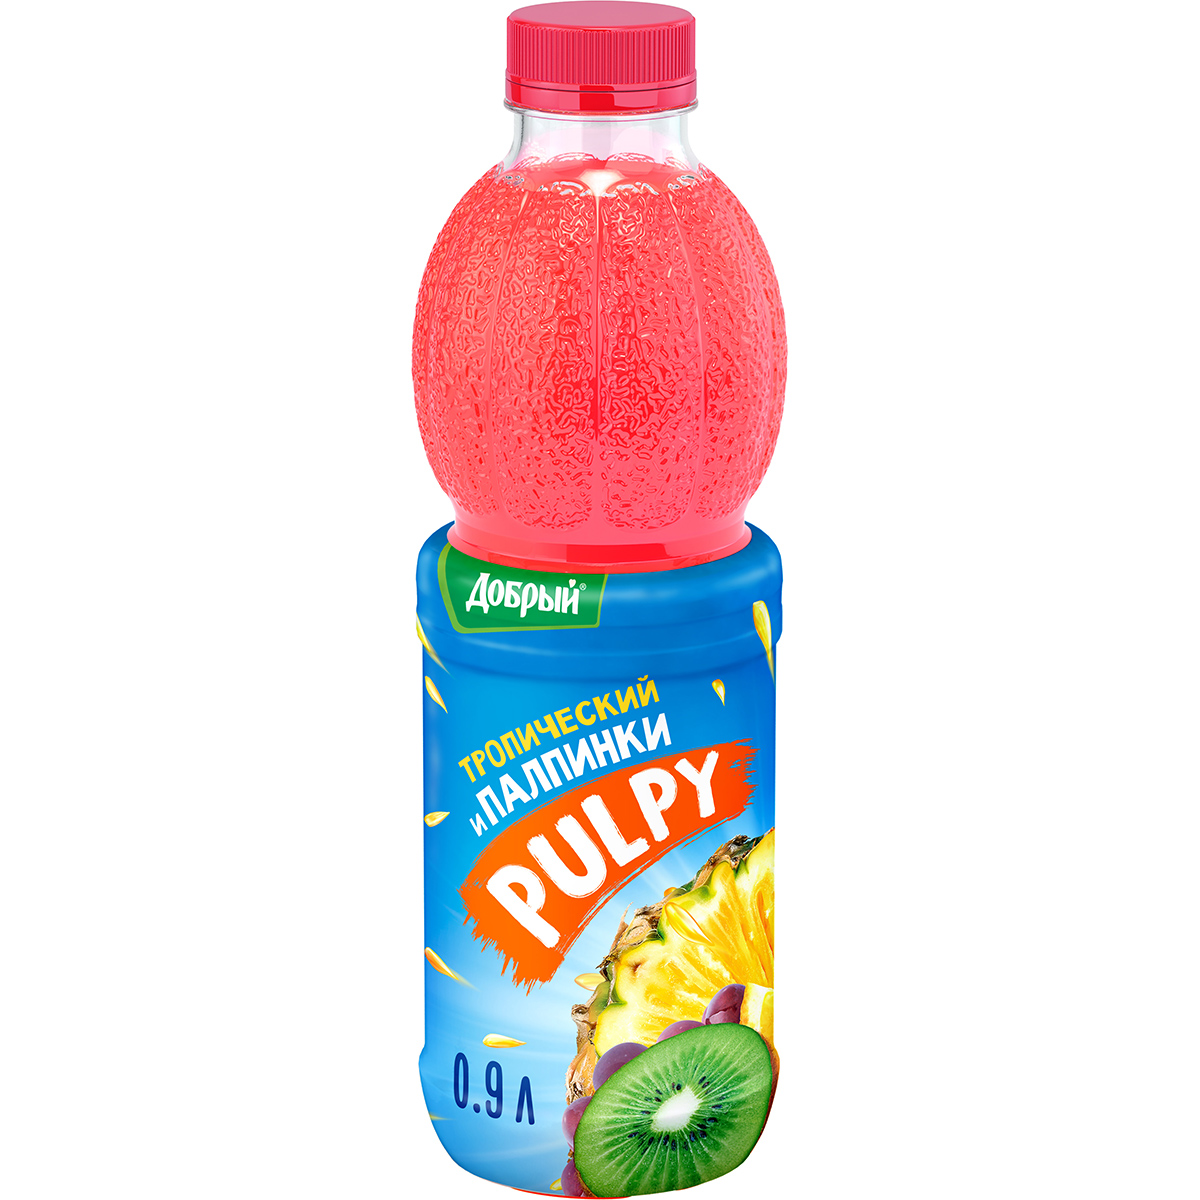 Напиток Pulpy сокосодержащий Тропический с мякотью 0,9 л напиток сокосодержащий pulpy клубника арбуз и кусочки алоэ 0 45 л